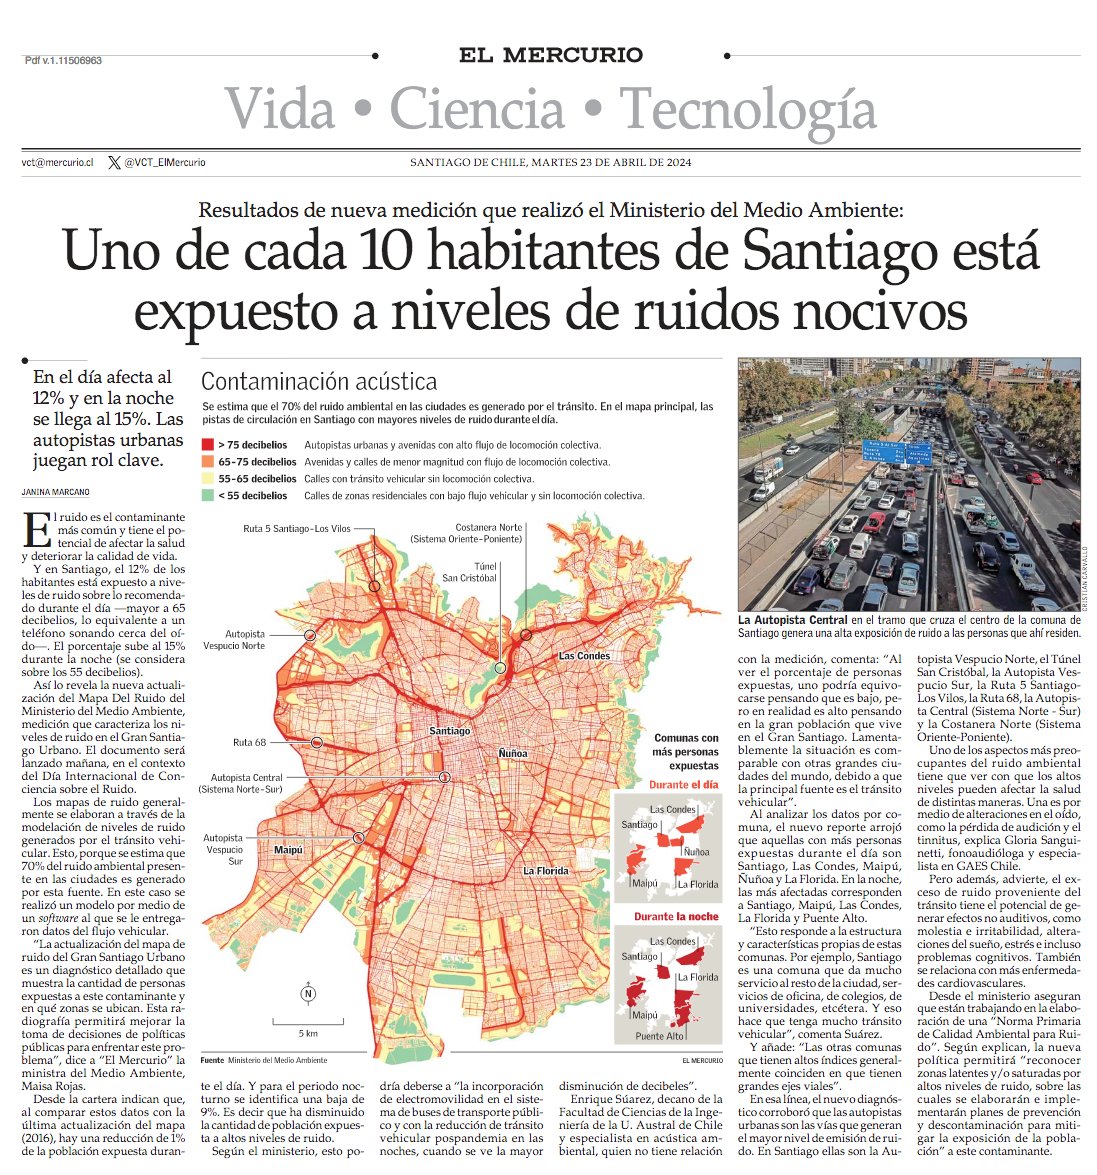 Uno de cada 10 habitantes de Santiago está expuesto a niveles de ruidos nocivos. #VCTElMercurio shorturl.at/vACZ2